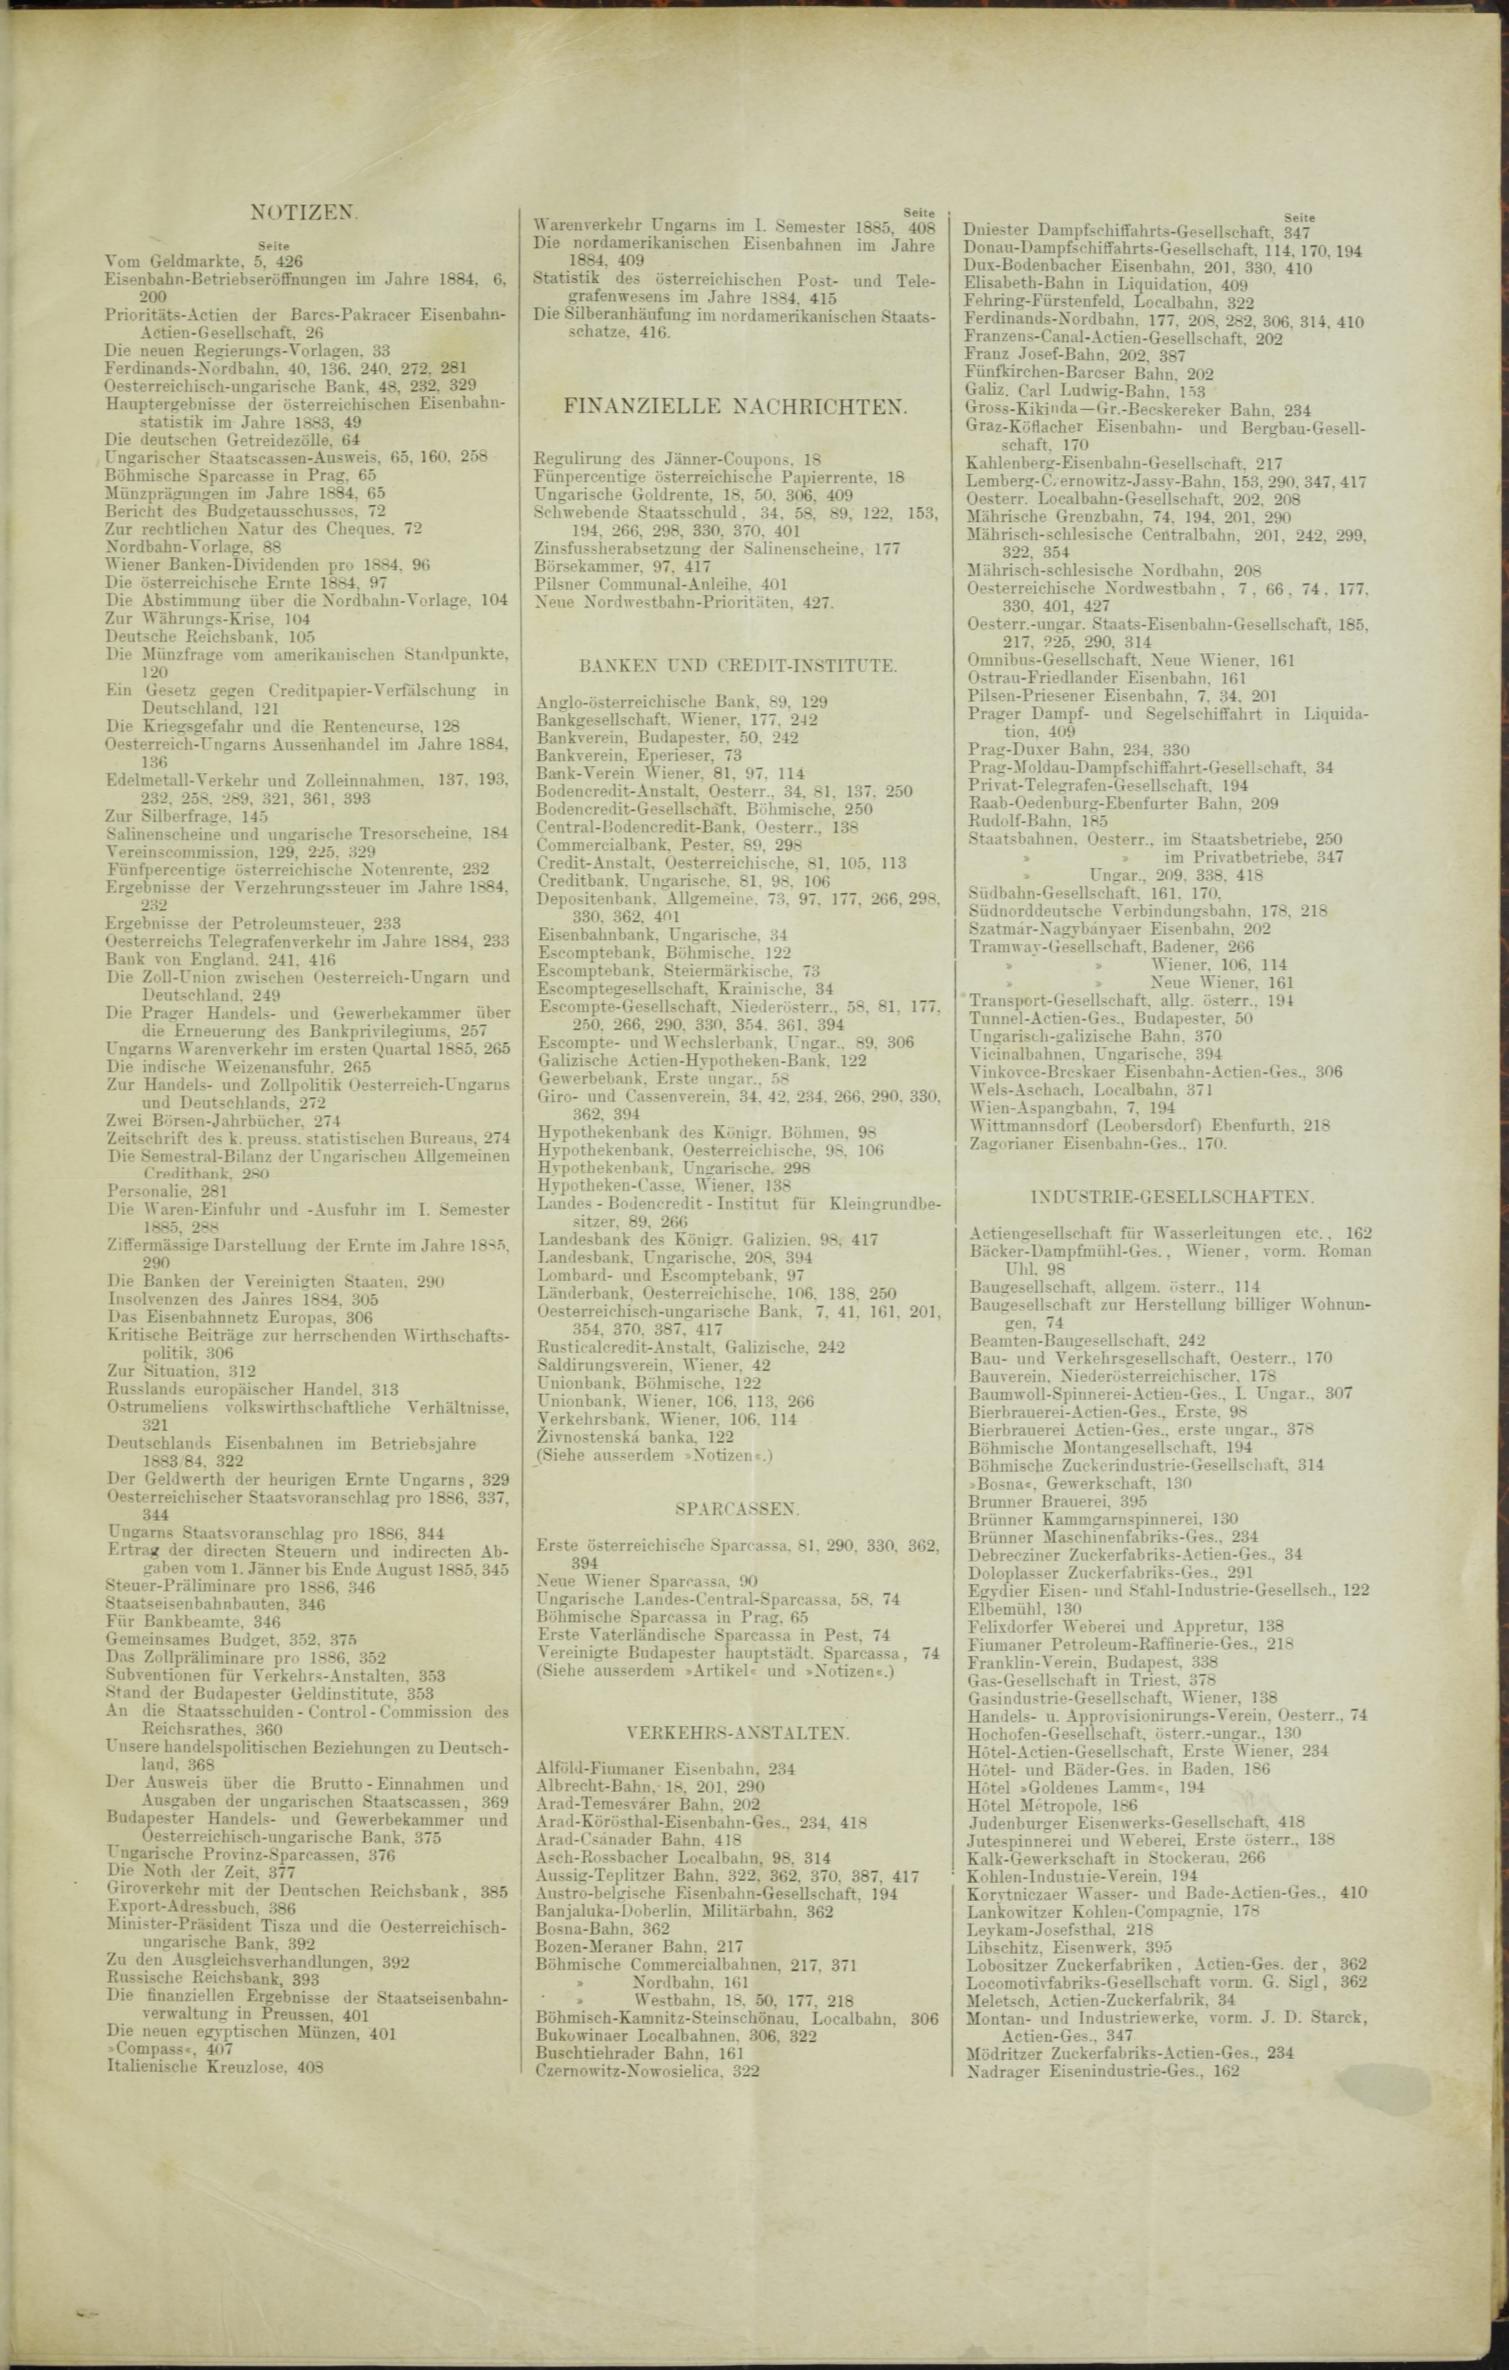 Der Tresor 08.01.1885 - Seite 15